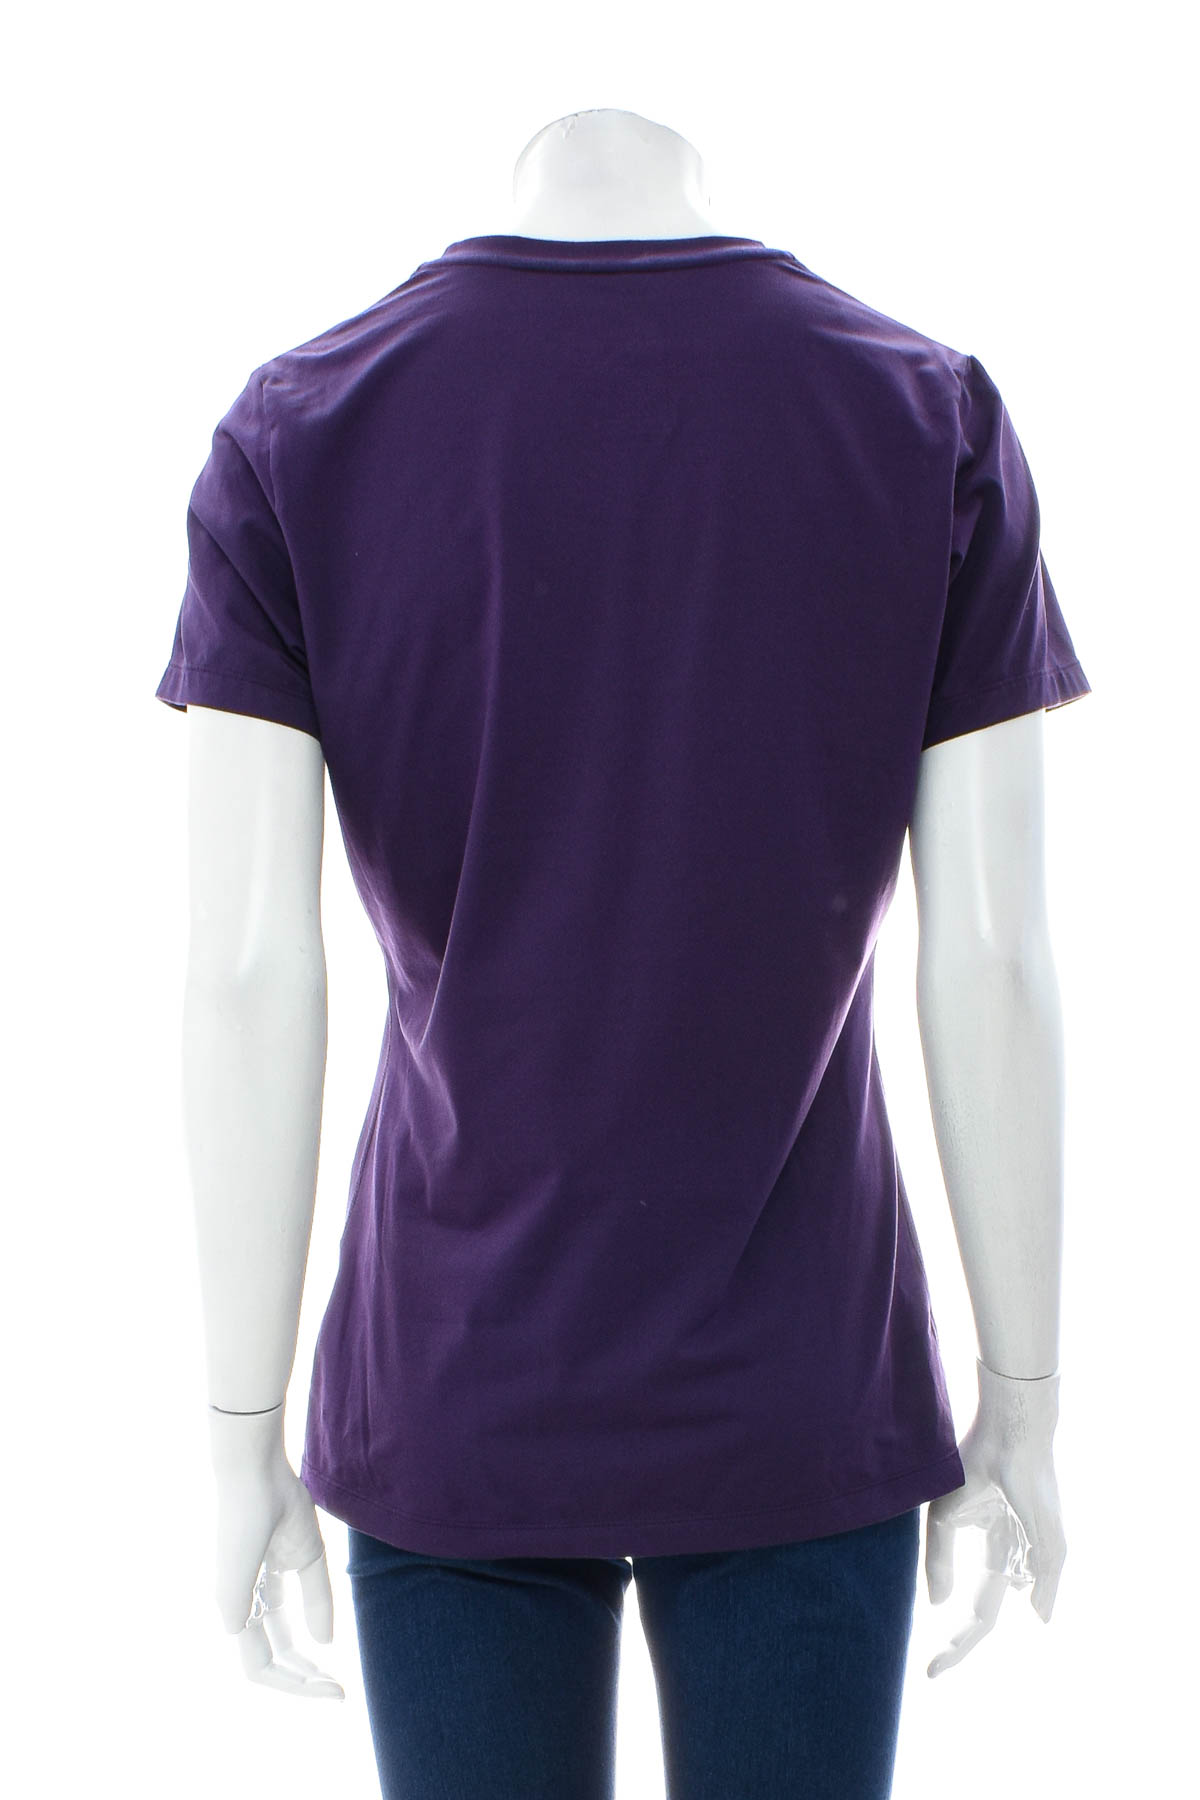 Γυναικείο μπλουζάκι - Nike Dri-Fit - 1